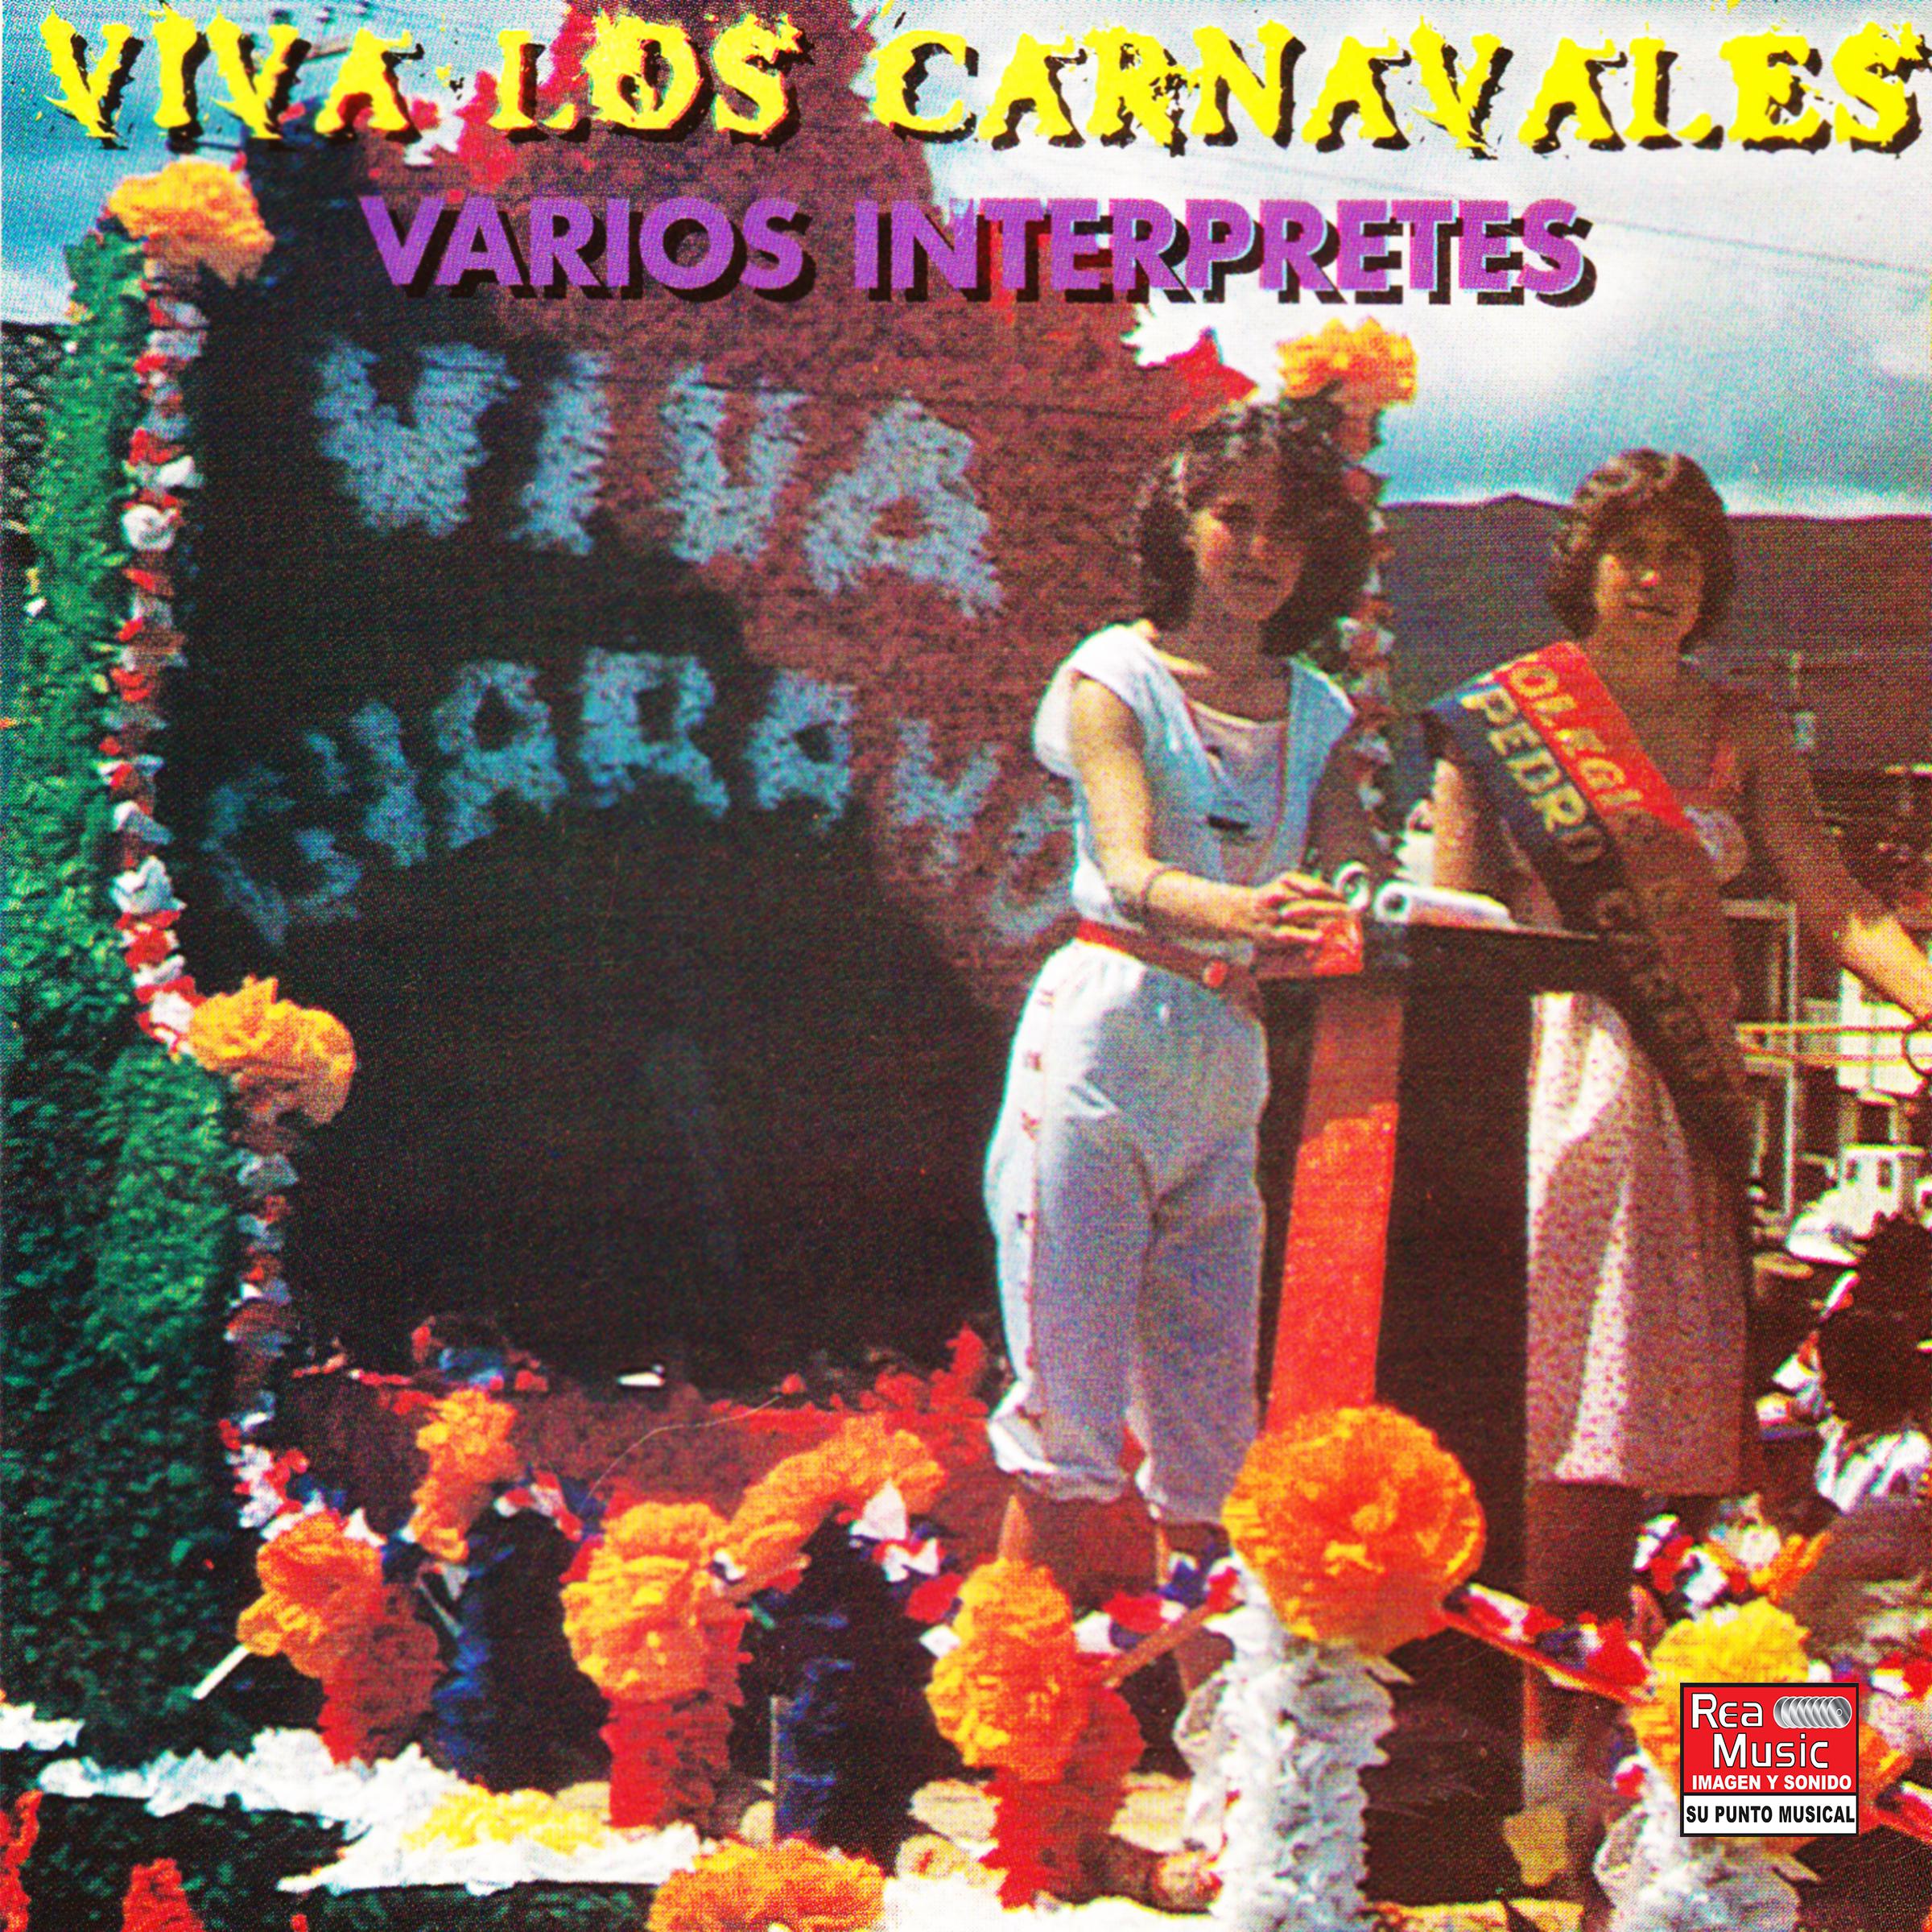 Carnaval de Julio Moreno